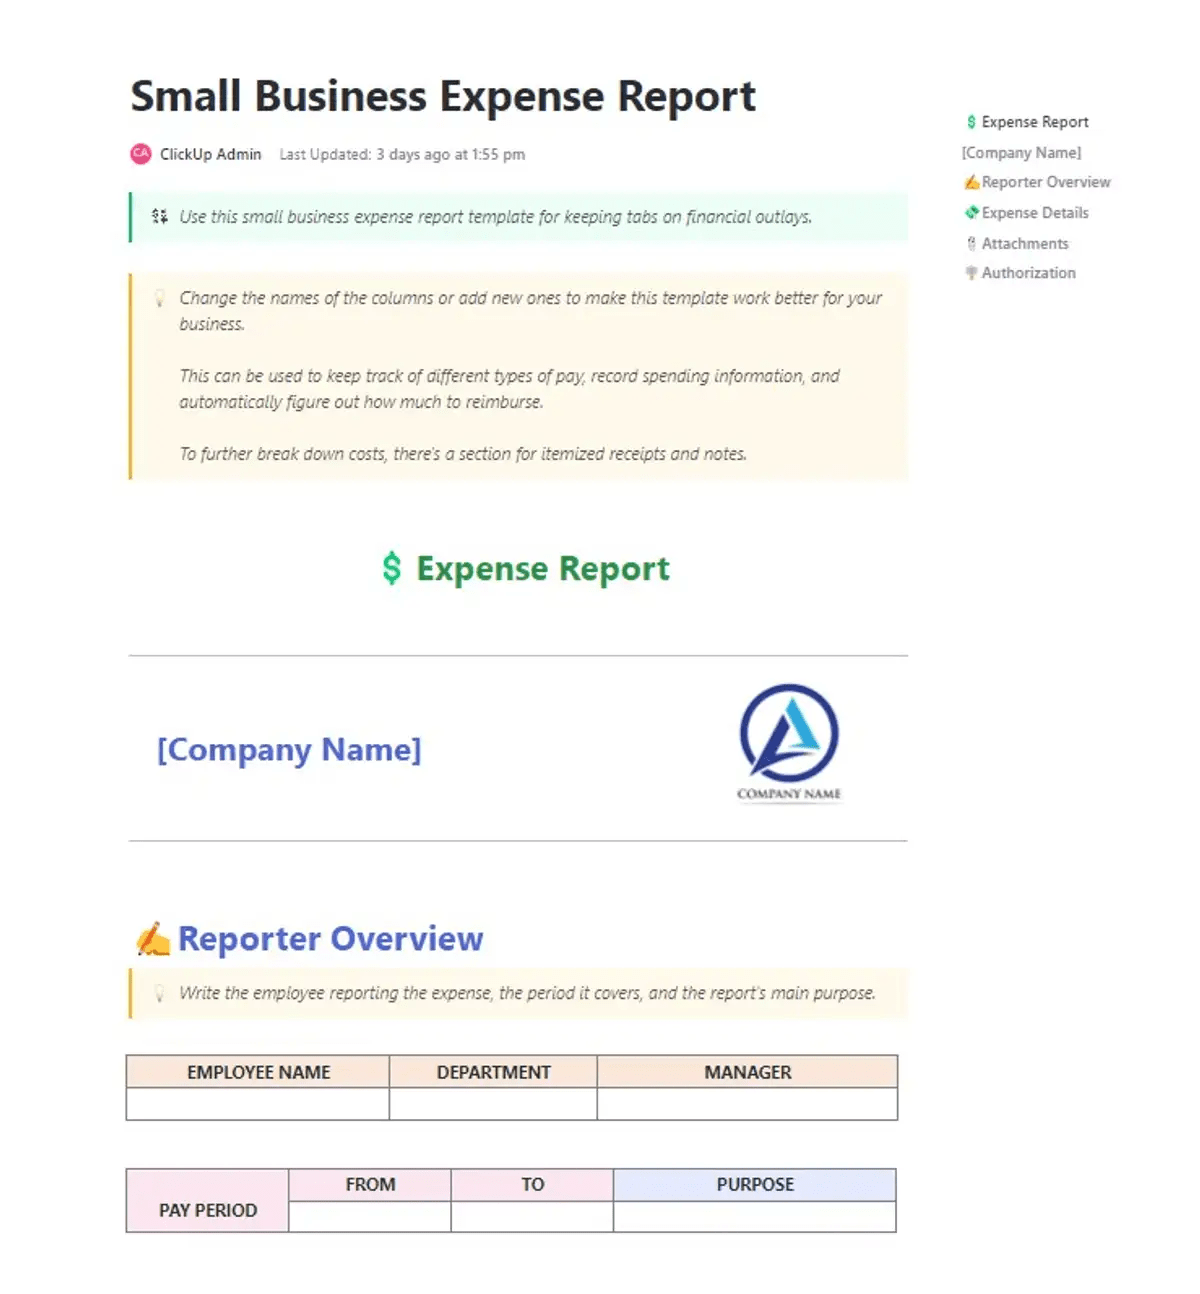 Gardez un œil sur toutes les dépenses de votre petite entreprise de manière cohérente et organisée grâce au modèle de rapport de dépenses ClickUp Small Business